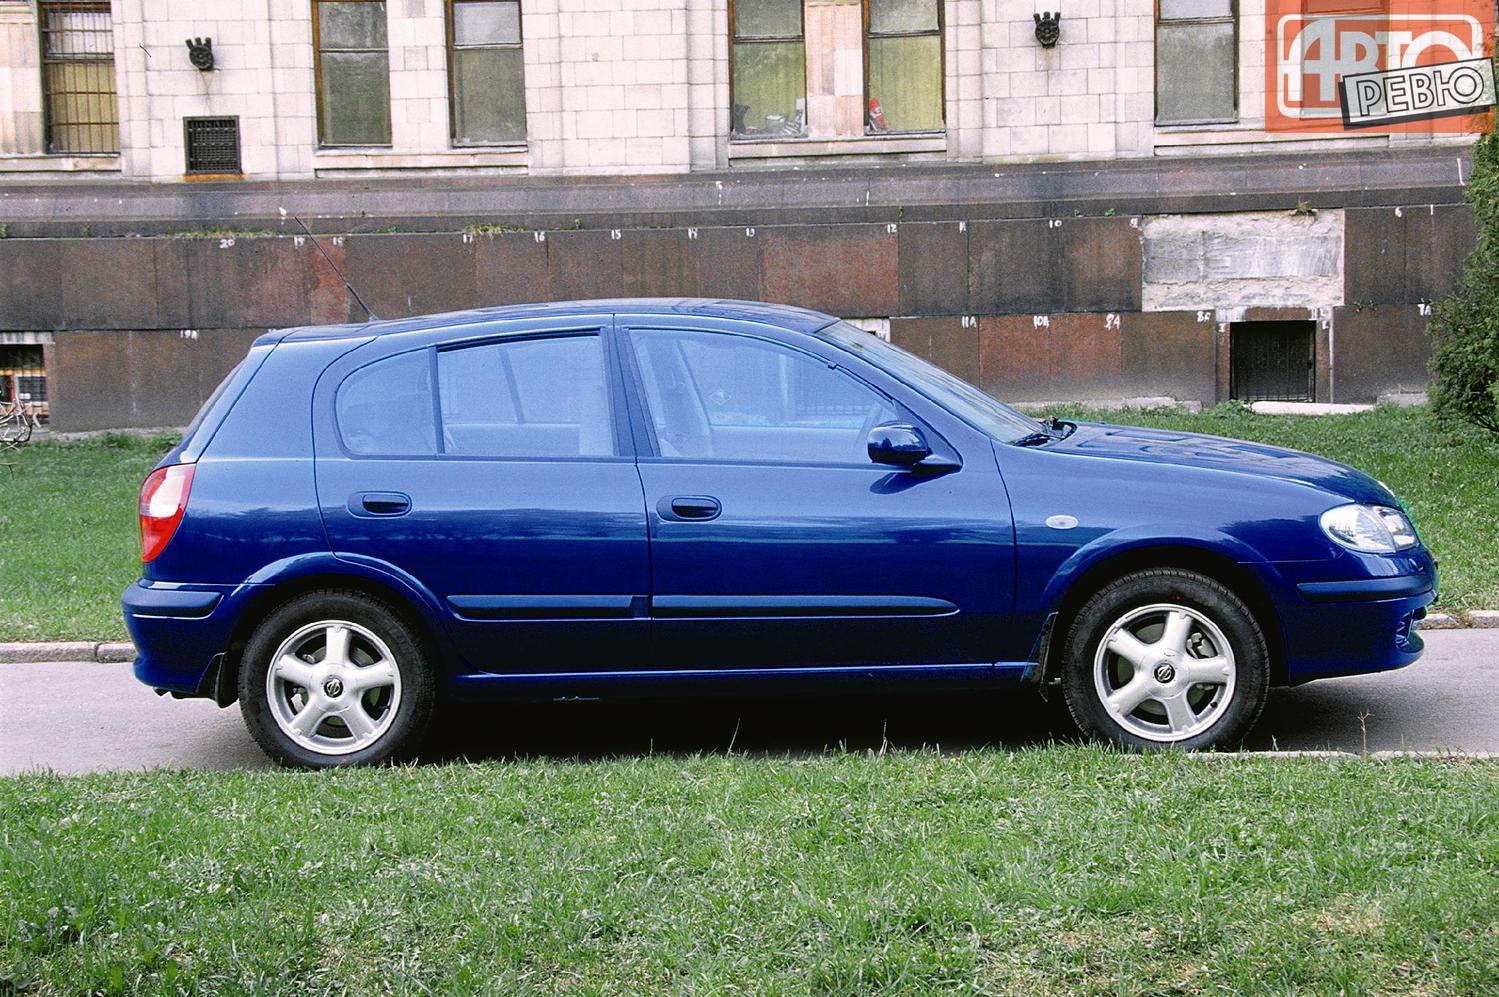 хэтчбек 5 дв. Nissan Almera 2000 - 2003г выпуска модификация 1.8 AT (114 л.с.)